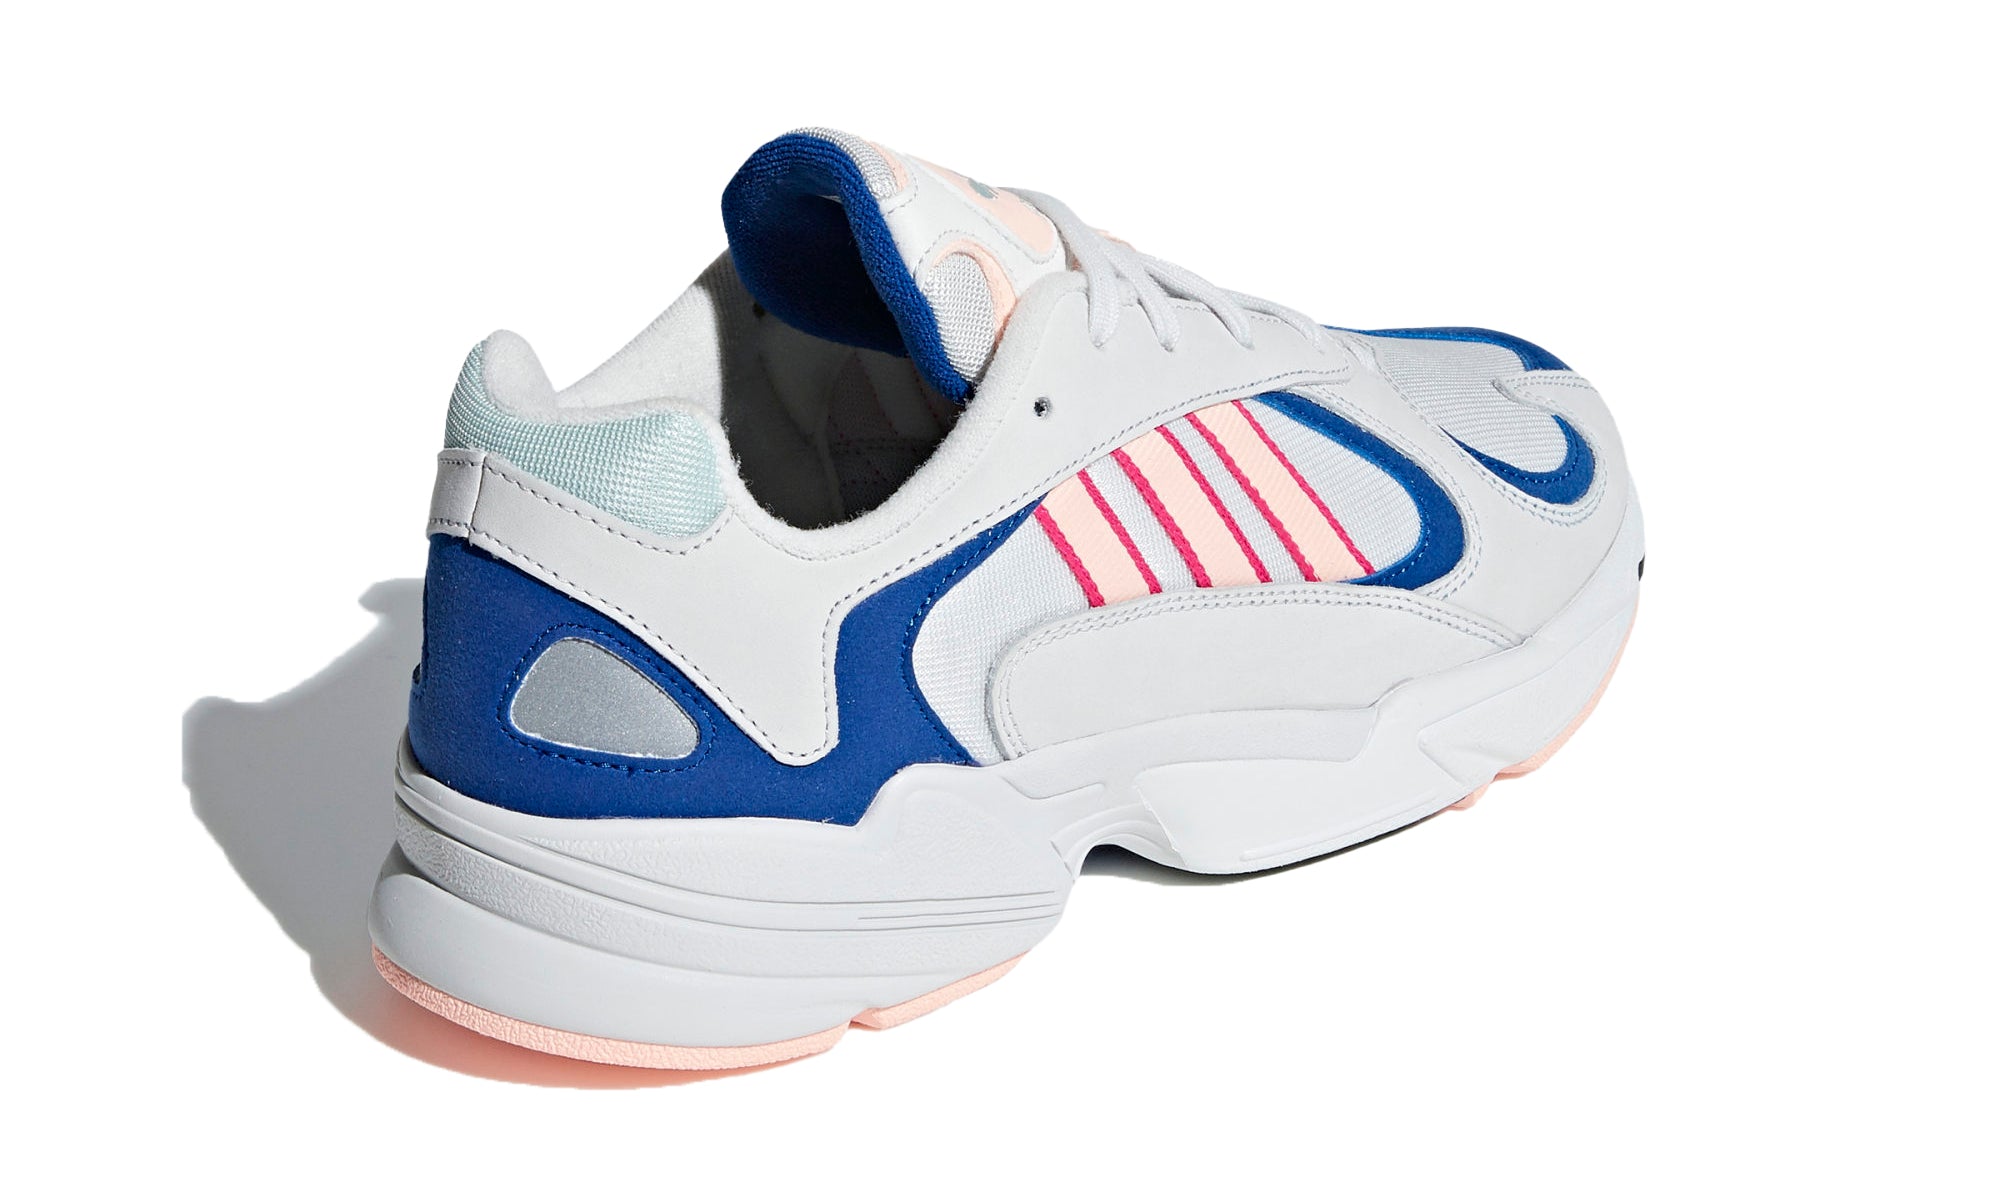 adidas Yung 1 'White/Blue/Pink'